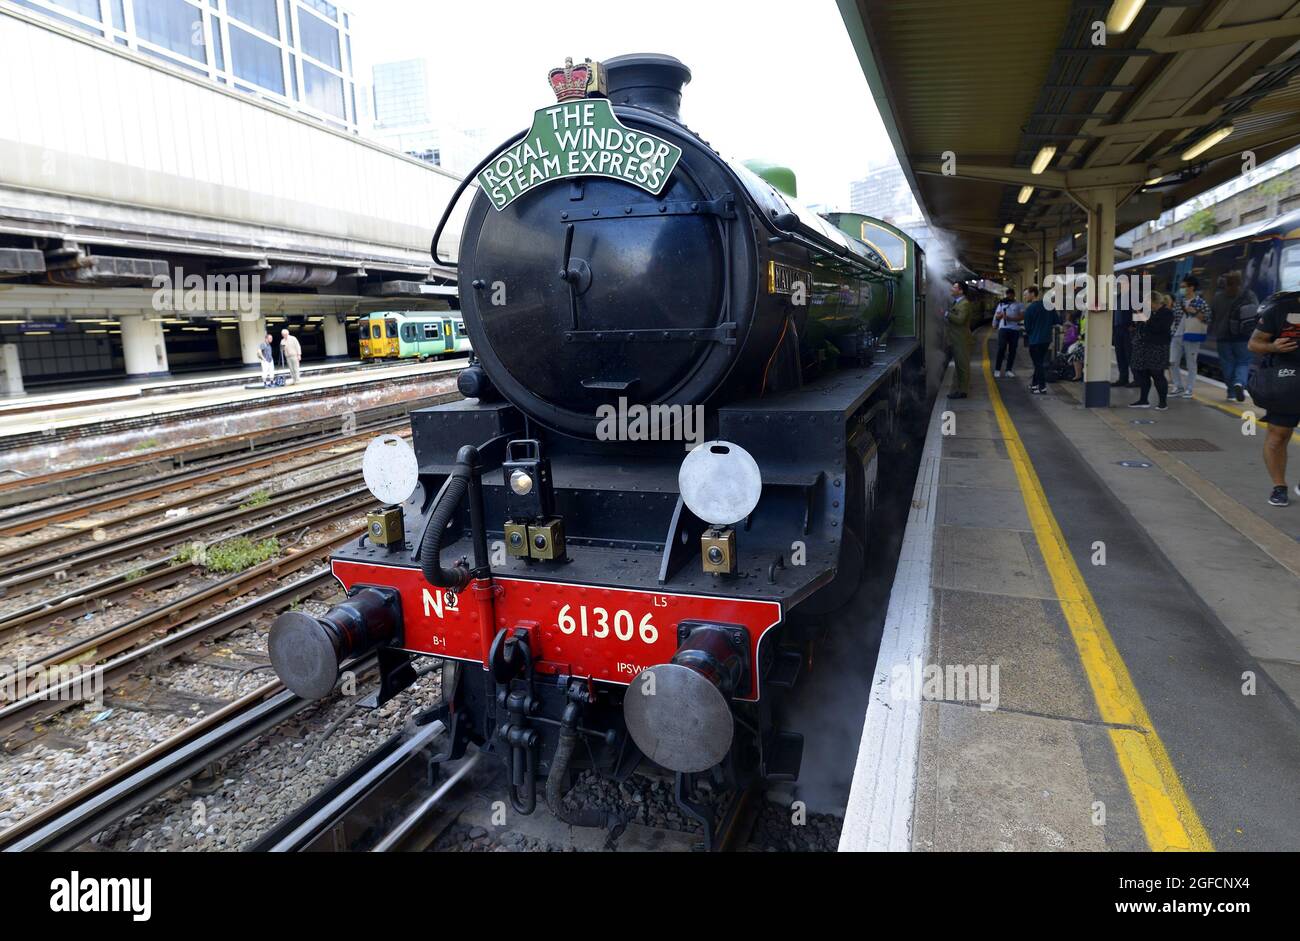 Royal Windsor Steam Express - treno a vapore che offre viaggi turistici tra Londra e Windsor - al binario 2 della Stazione Victoria. Locomot a vapore LNER B1 Foto Stock